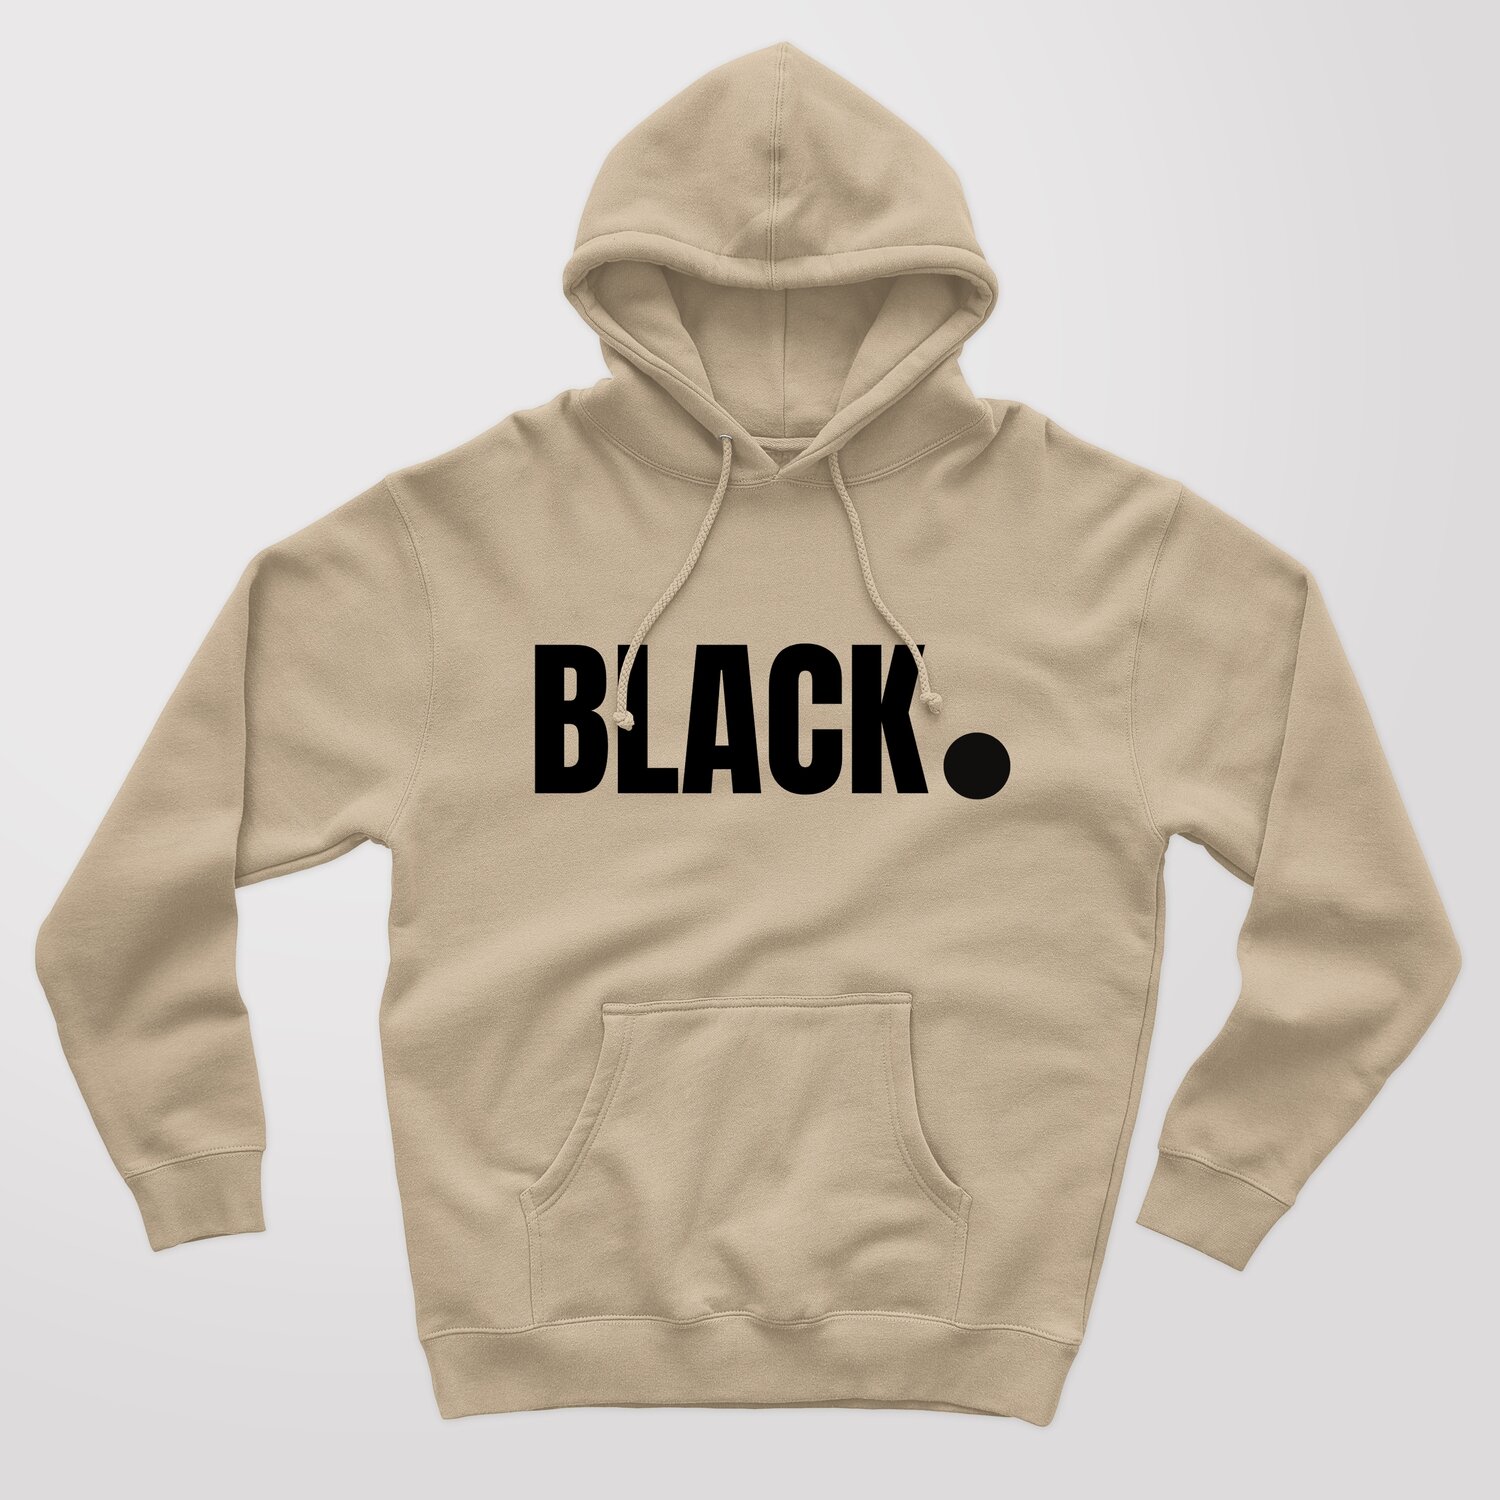 BLACK. Hoodie